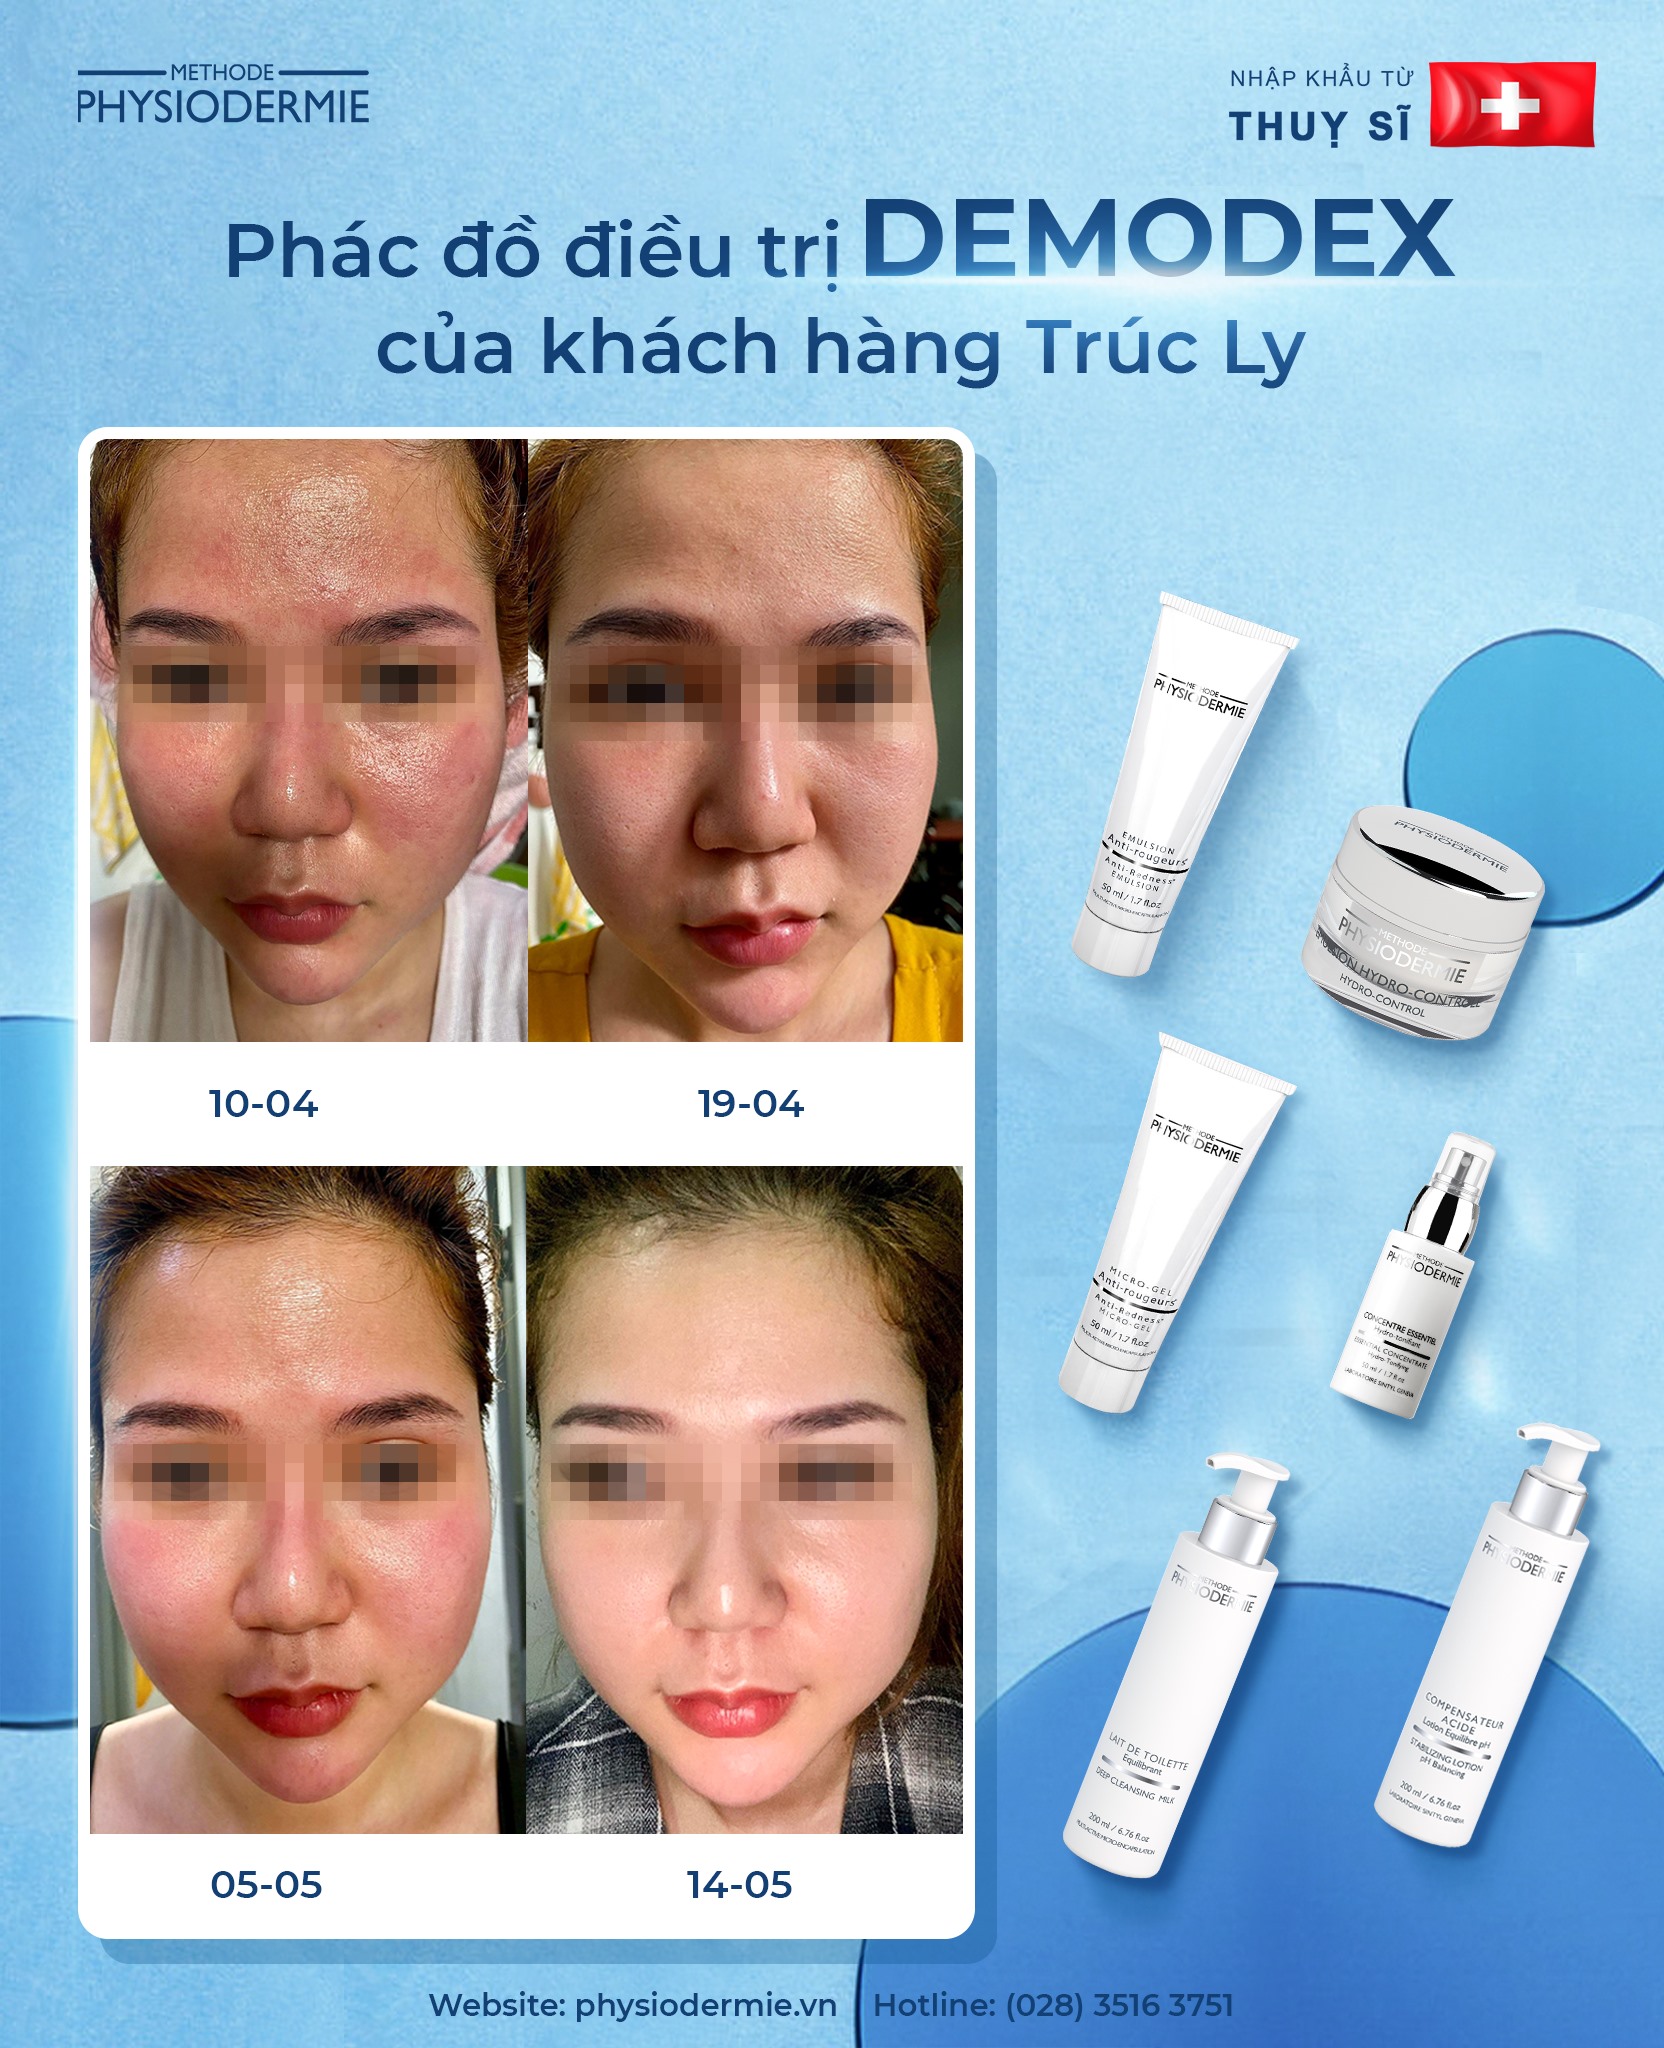 Phác đồ điều trị Demodex